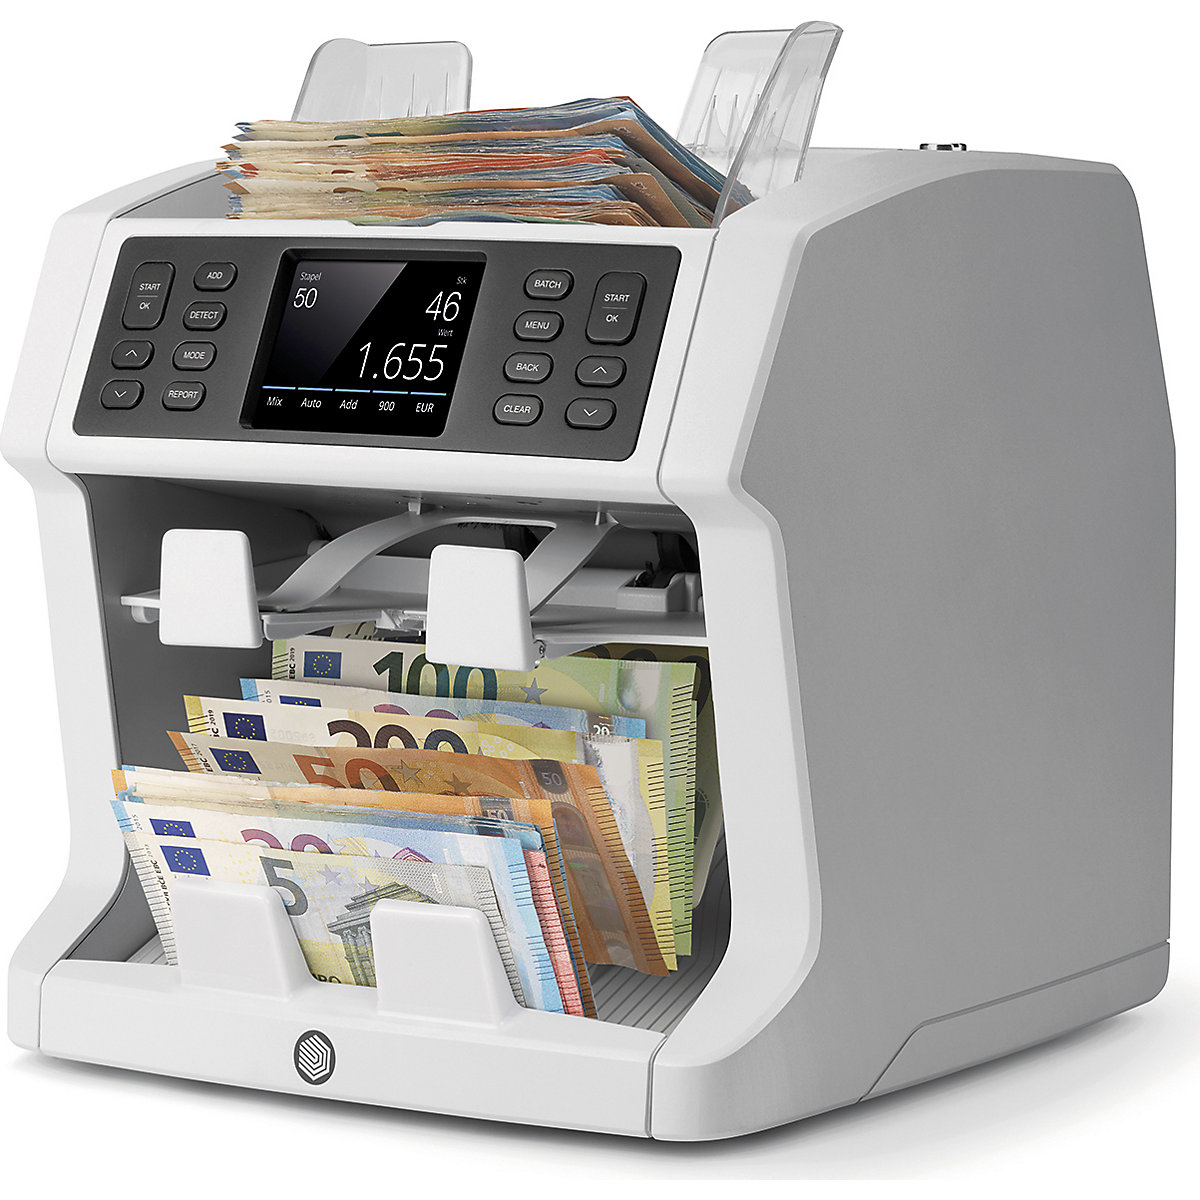 Liczarka banknotów, liczenie nieposortowanych banknotów, z funkcją sortowania – Safescan